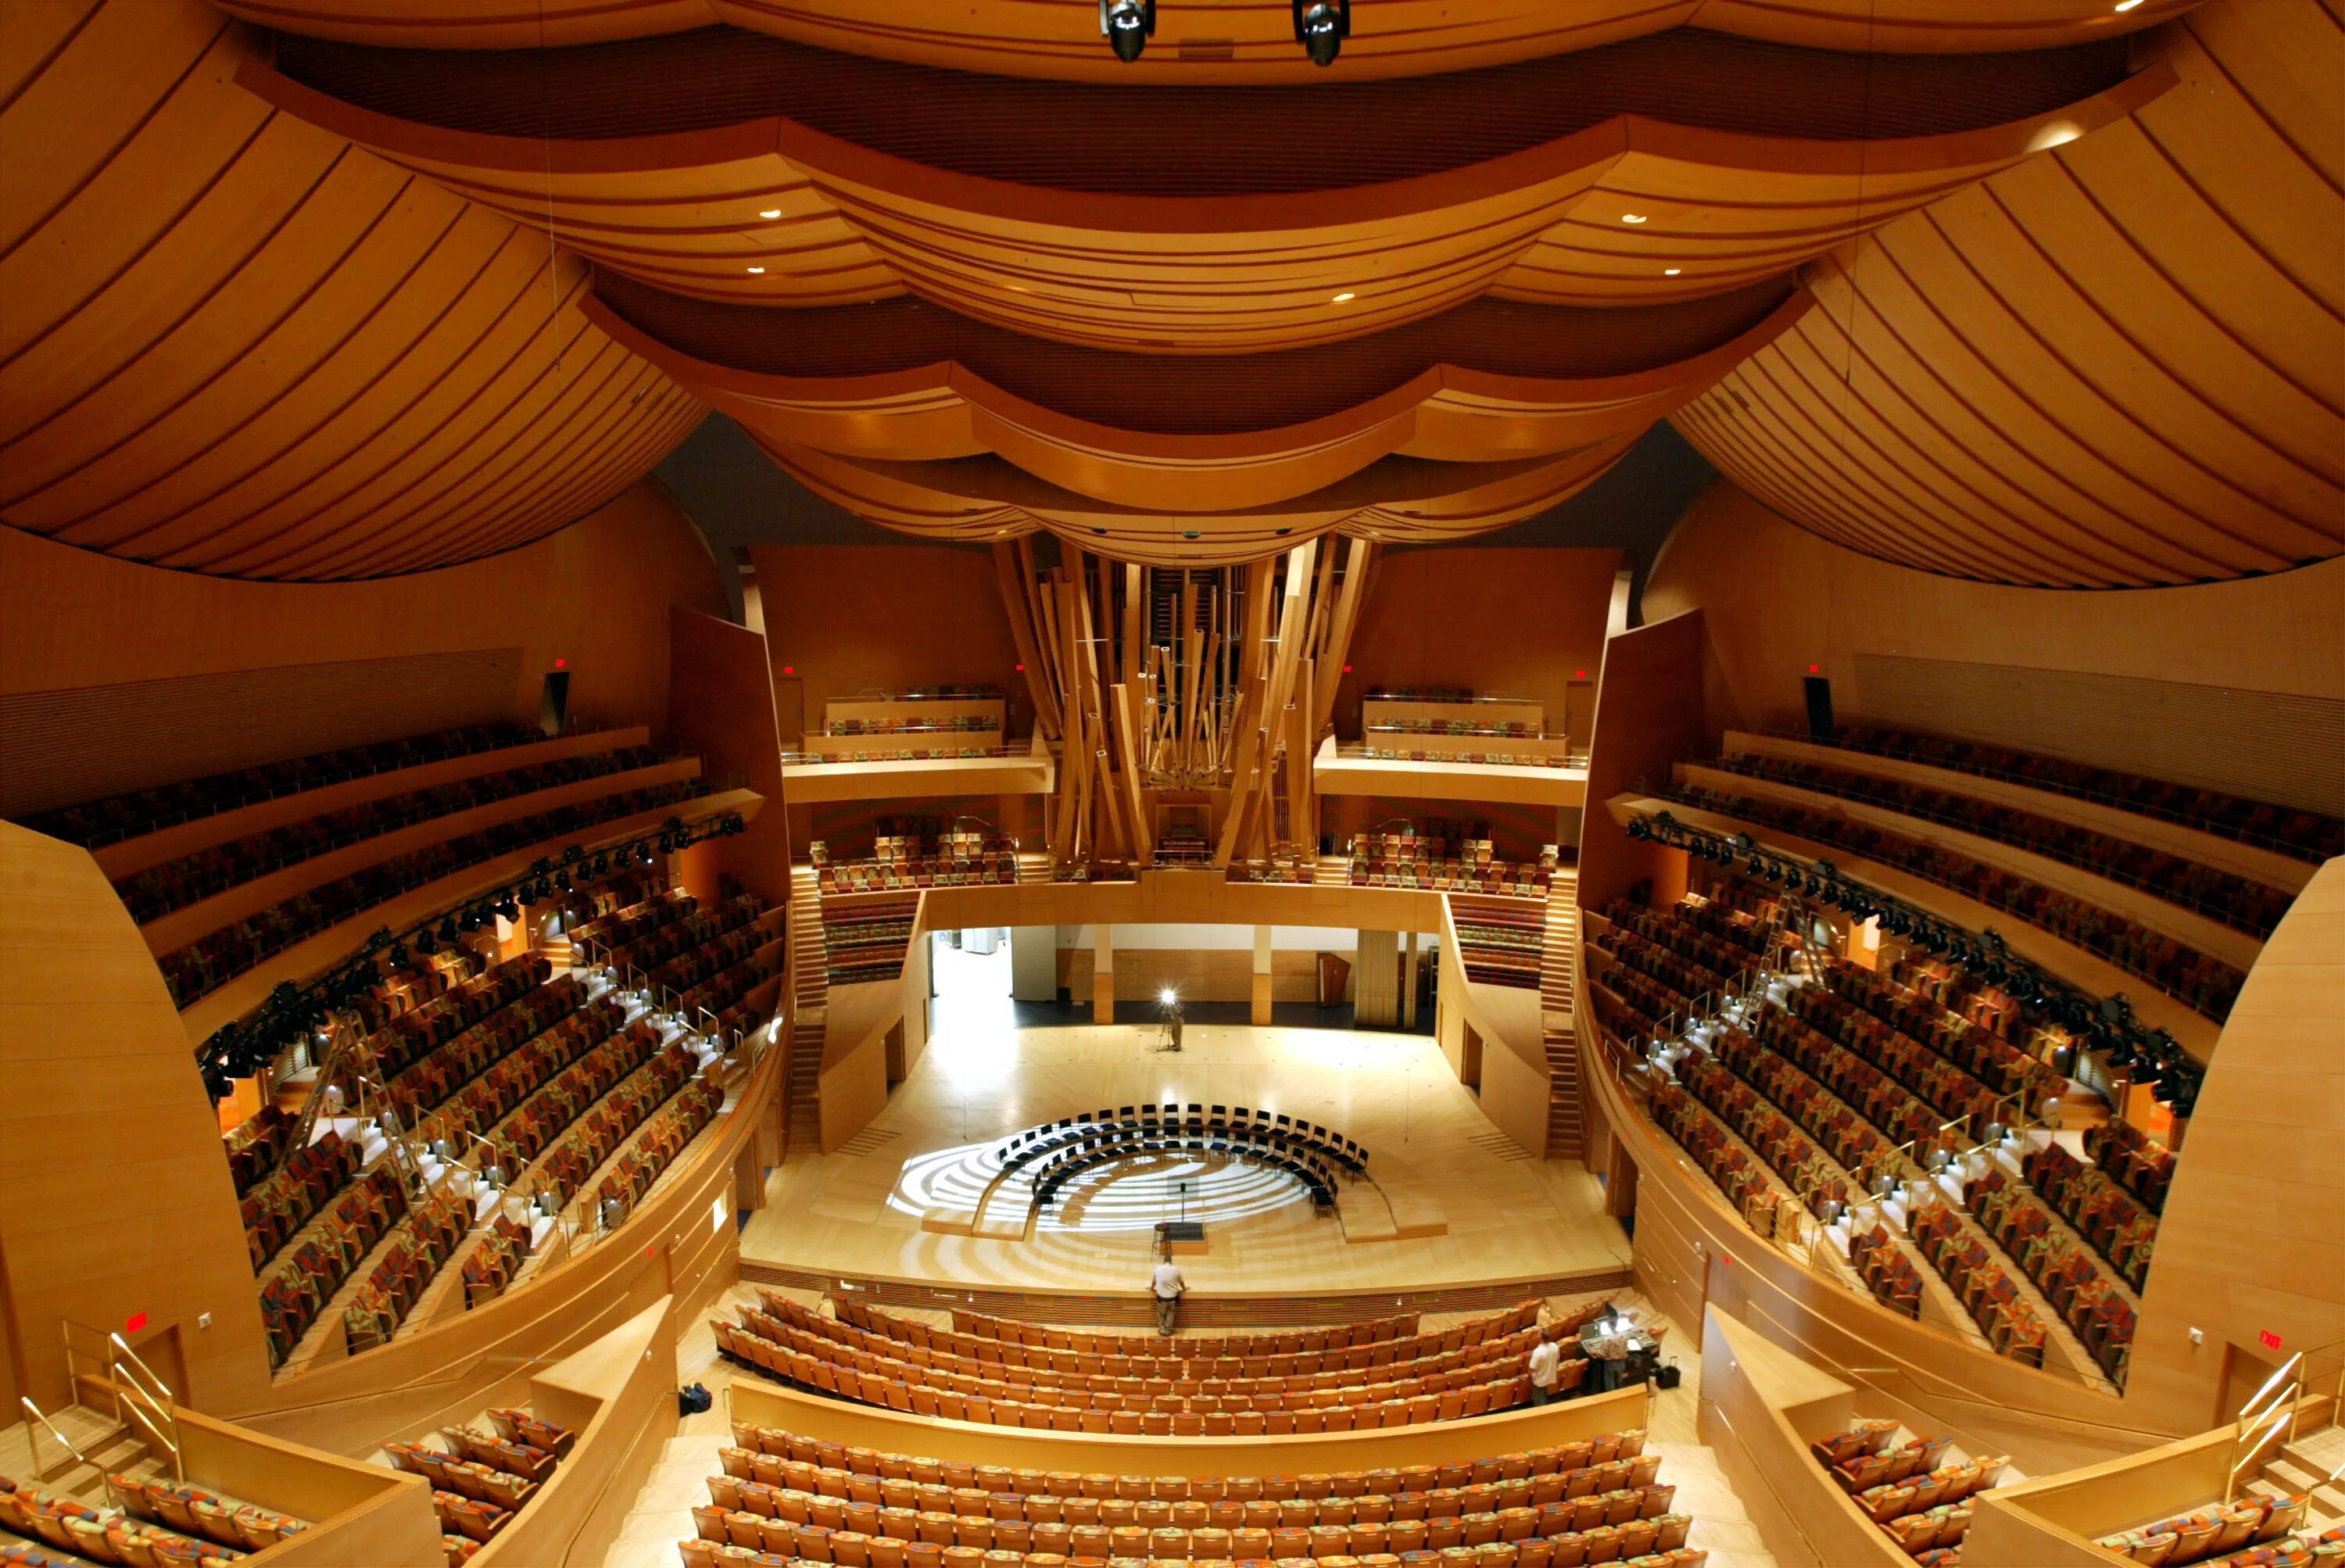 Концертный зал Уолта Диснея в Лос-Анджелесе, США. Walt Disney концертный зал (Лос Анджелес). Фрэнк Гери концертный зал Уолта Диснея. Зал Уолта Диснея (Лос-Анджелес, США, 2003 Г.). Концертный зал диснея